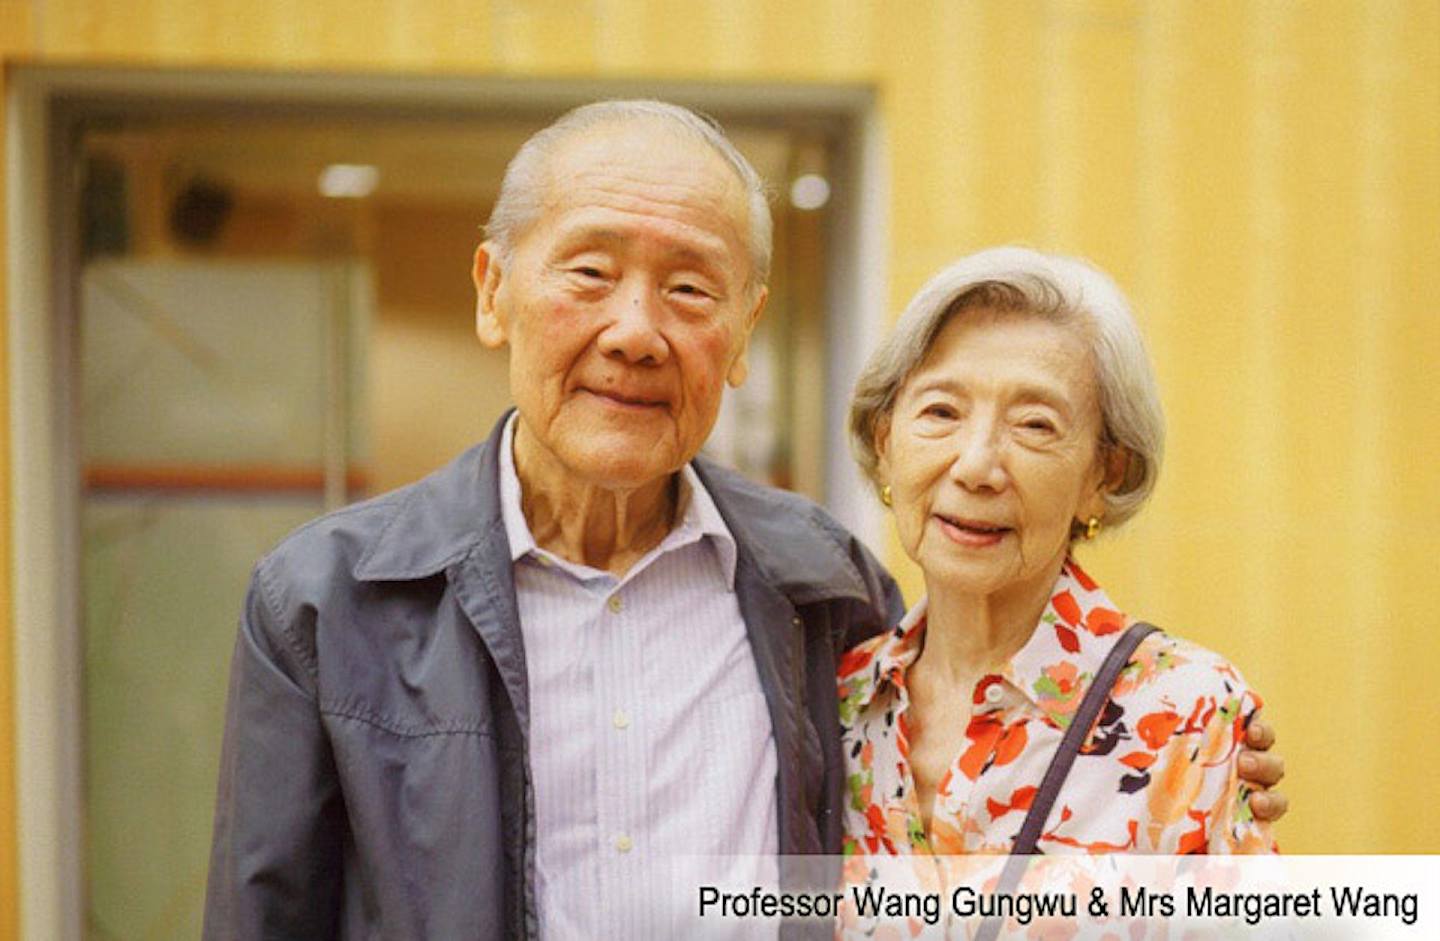 王赓武（左）是知名历史学家及香港大学第十一任校长，图为他与妻子合照（HKU eConnect网站）